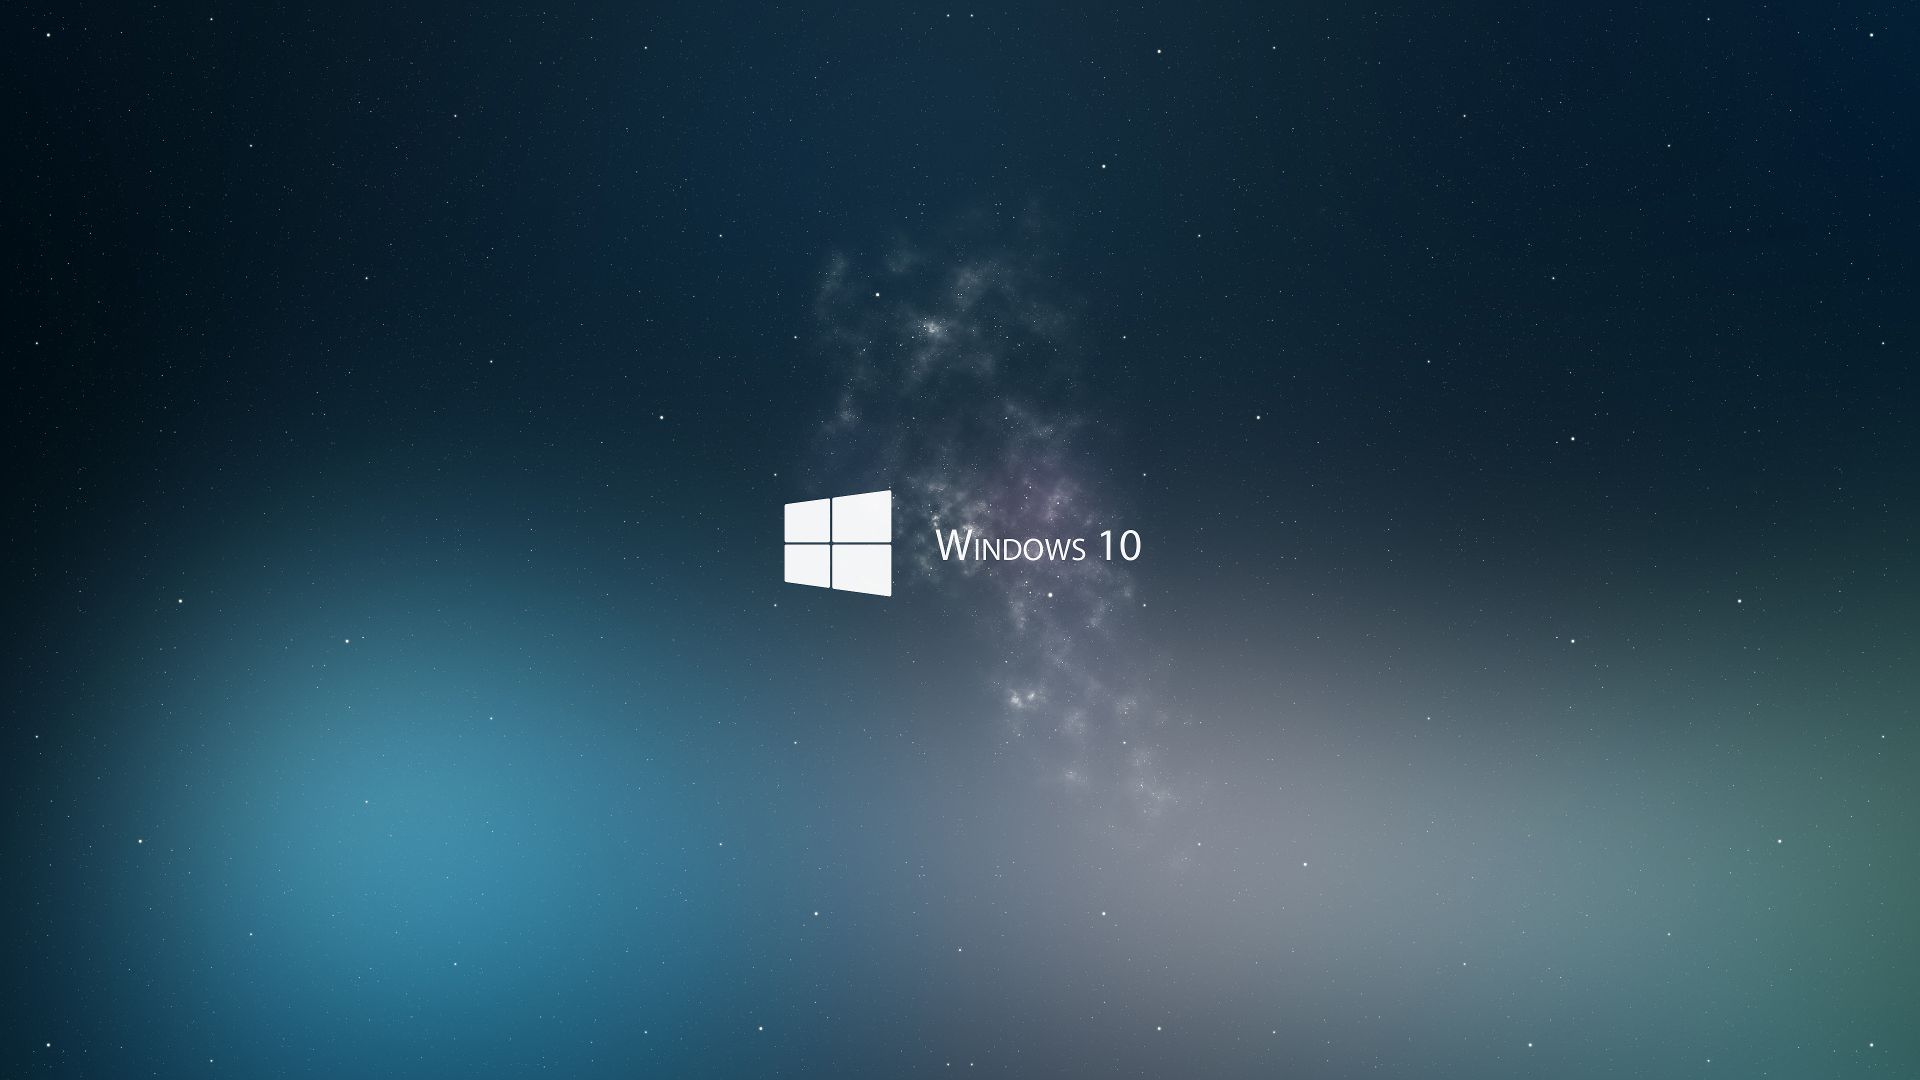 Виндовс 10, 4k, 5k, Майкрософт, синий, Windows 10, 4k, 5k wallpaper, Microsoft, blue (horizontal)